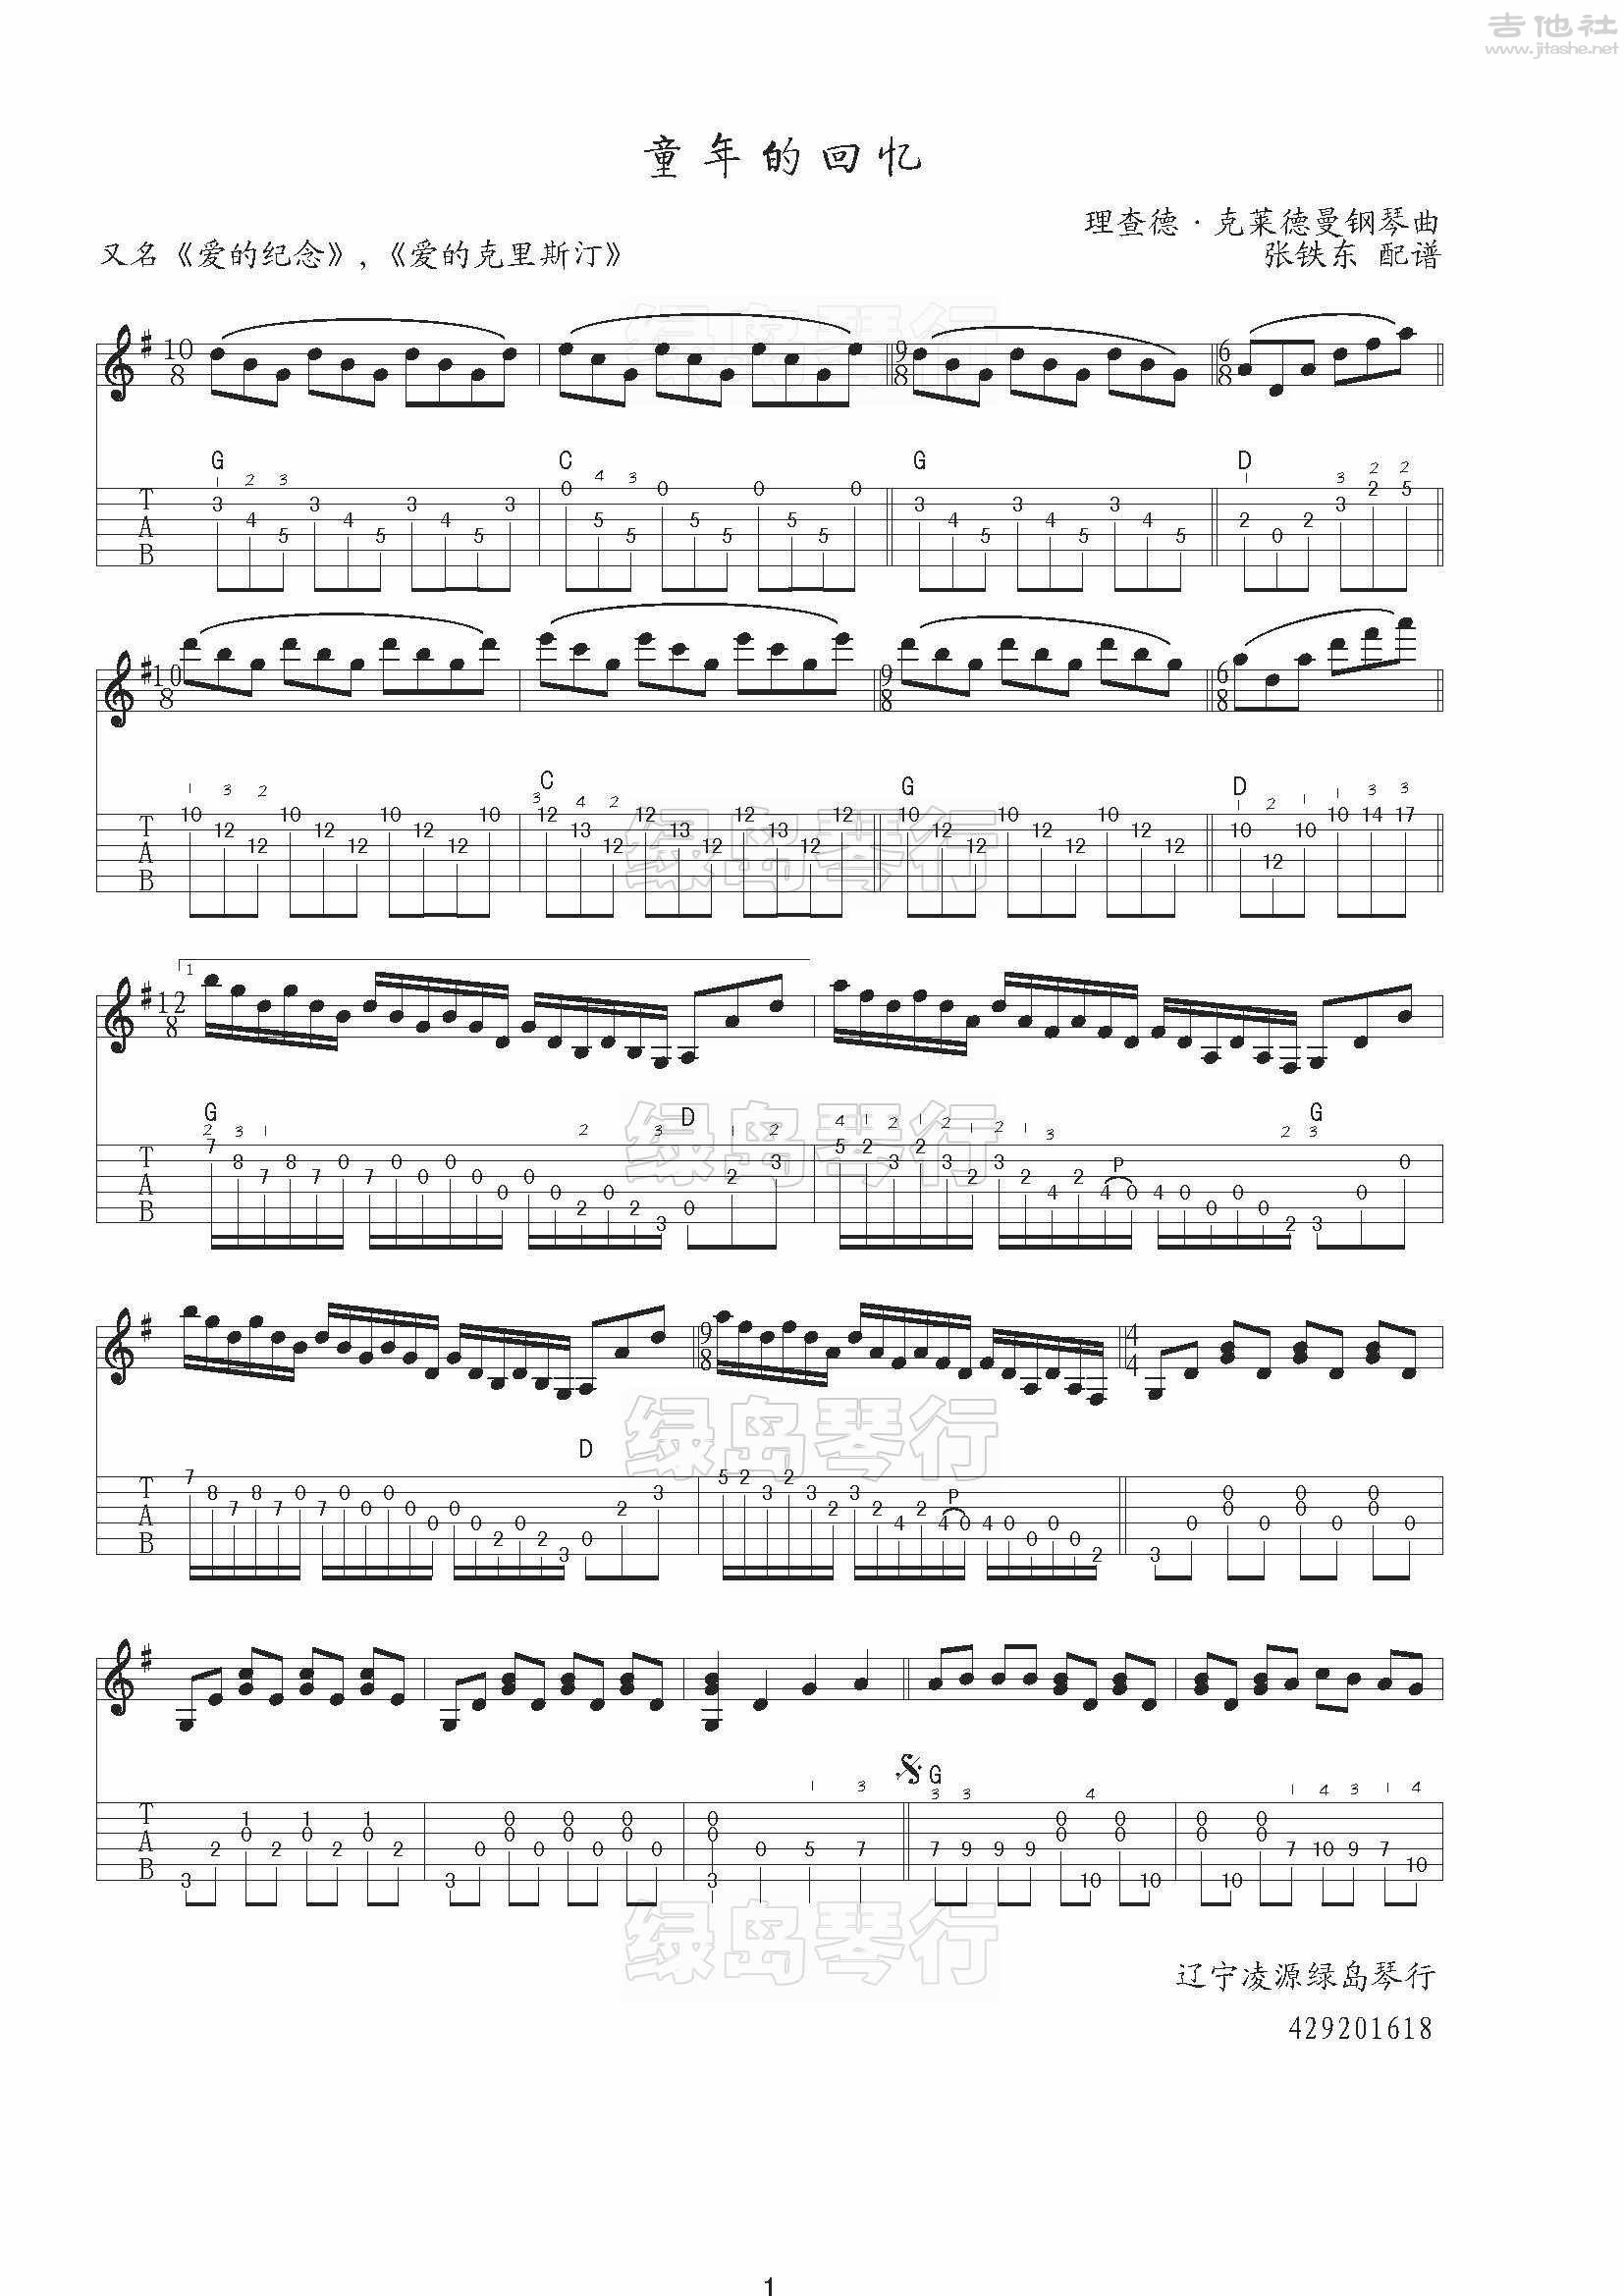 童年的回忆吉他谱(图片谱,指弹)_Richard Clayderman(理查德·克莱德曼)_理查德·克莱德曼_童年的回忆_1.jpg